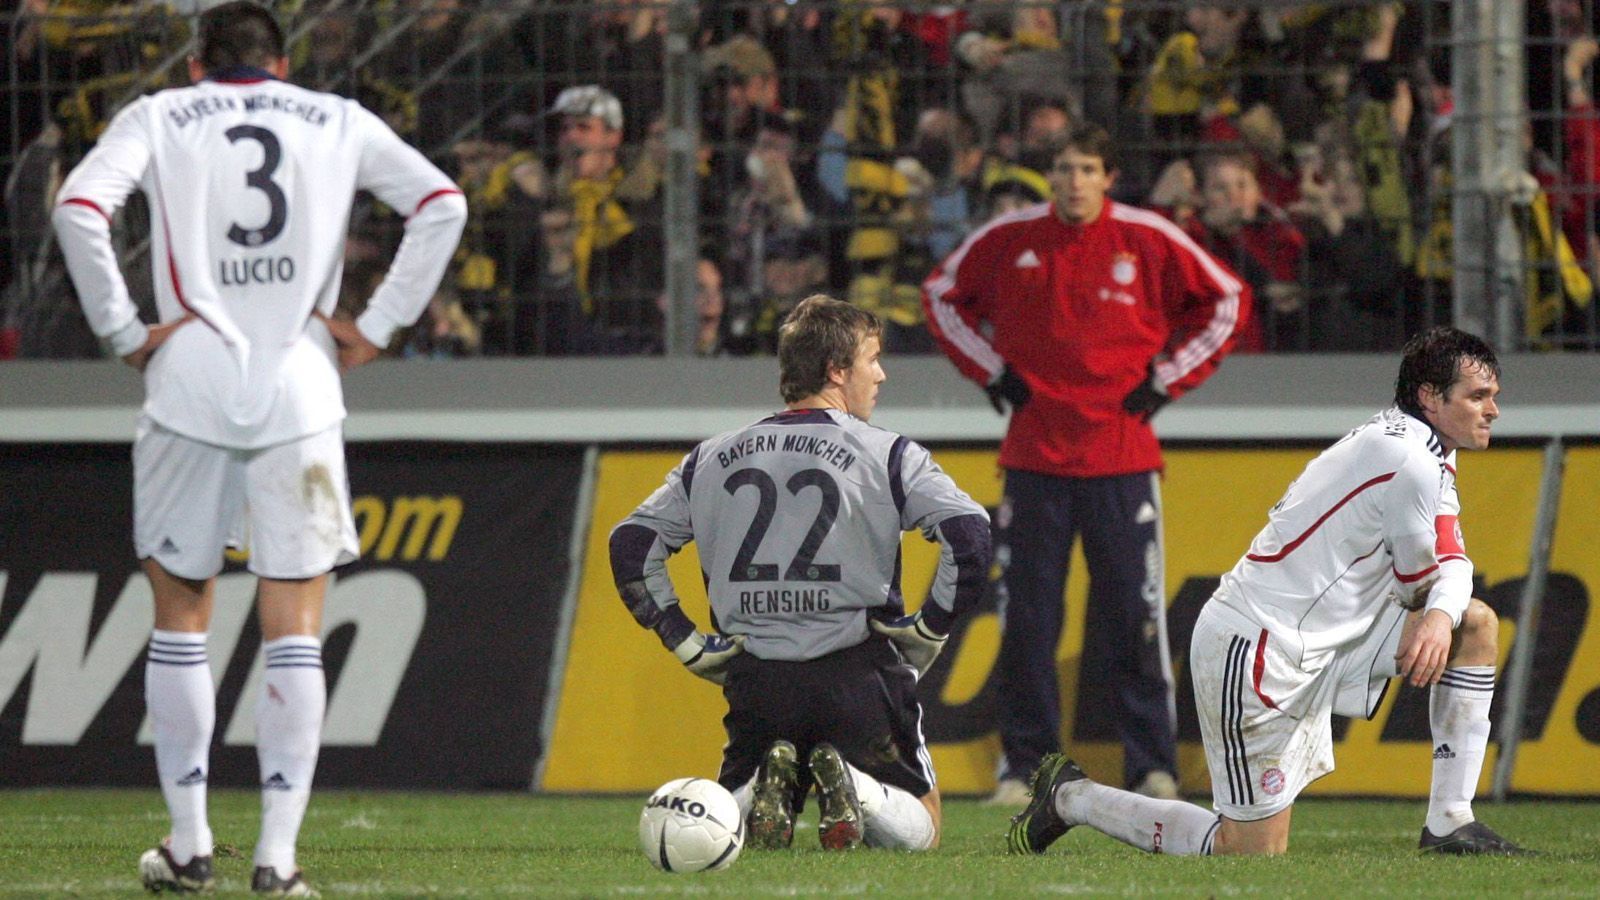 <strong>Saison 2006/2007: Pokal-Pleite löste eine Krise aus</strong><br>
                Eine ganz schwache Saison erlebte der FC Bayern 2006/2007. Damals unterlag der Rekordmeister im Pokal-Achtelfinale mit 2:4 bei Alemannia Aachen. Zu Beginn der Rückrunde folgten zwei Niederlagen und ein Unentschieden. Bayern landete schlussendlich auf einem enttäuschenden 4. Tabellenplatz und verpasste sogar die Qualifikation für die Champions League.
